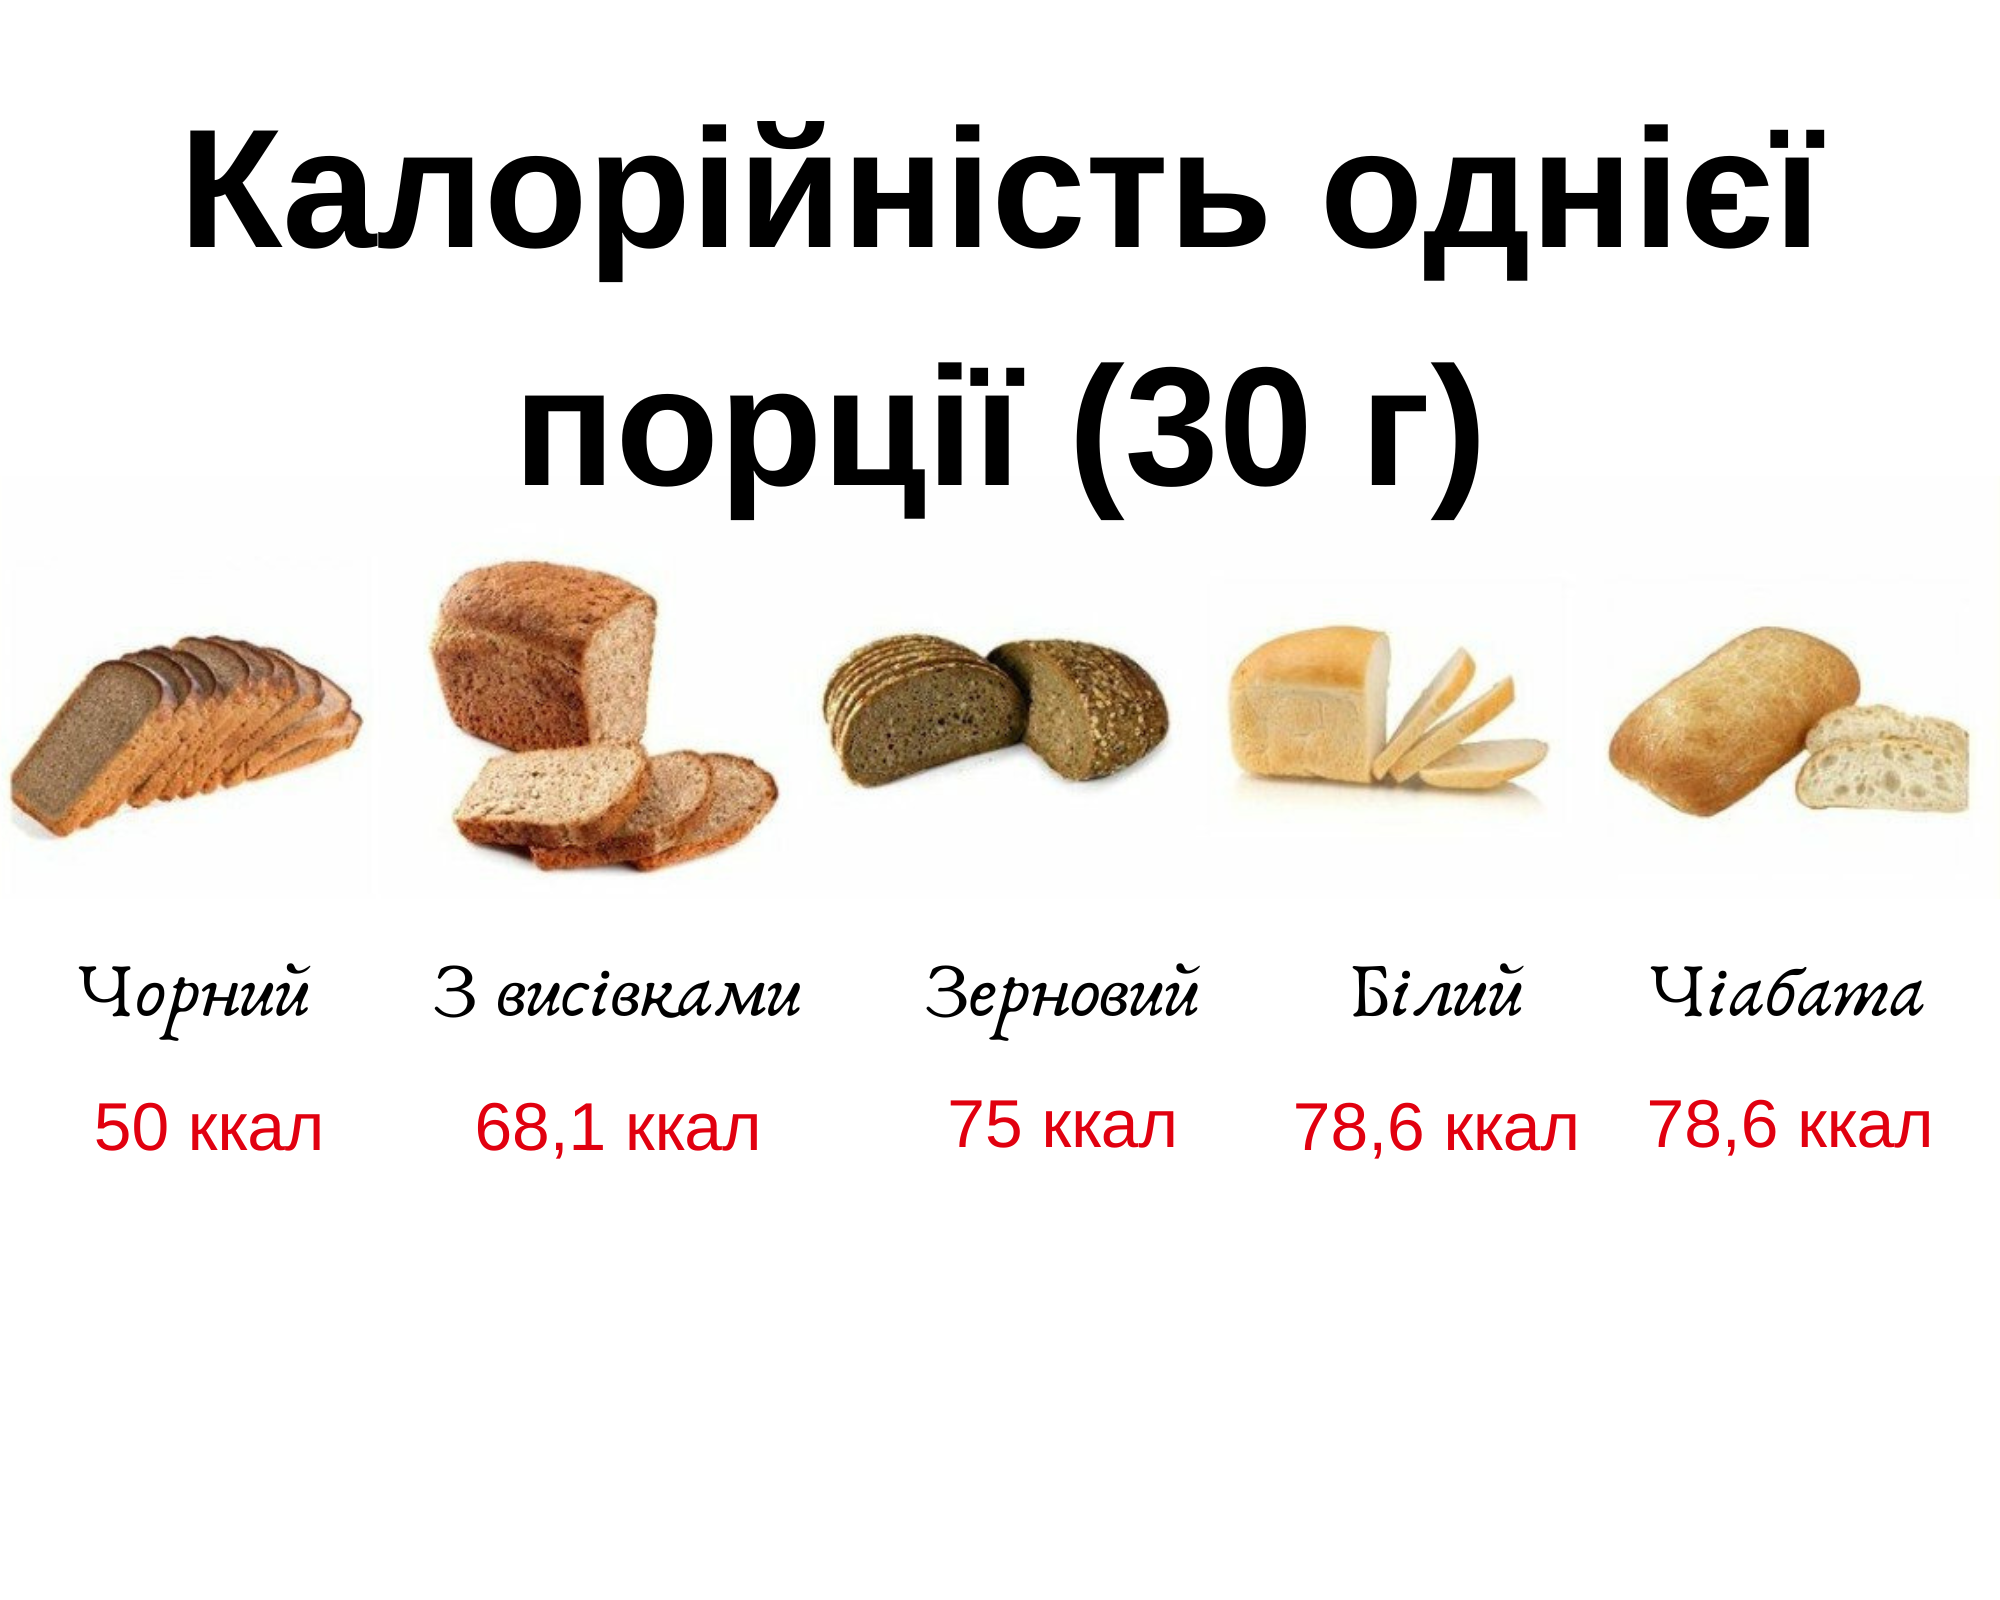 Сила хлеба. Почему хлеб остается продуктом № 1?